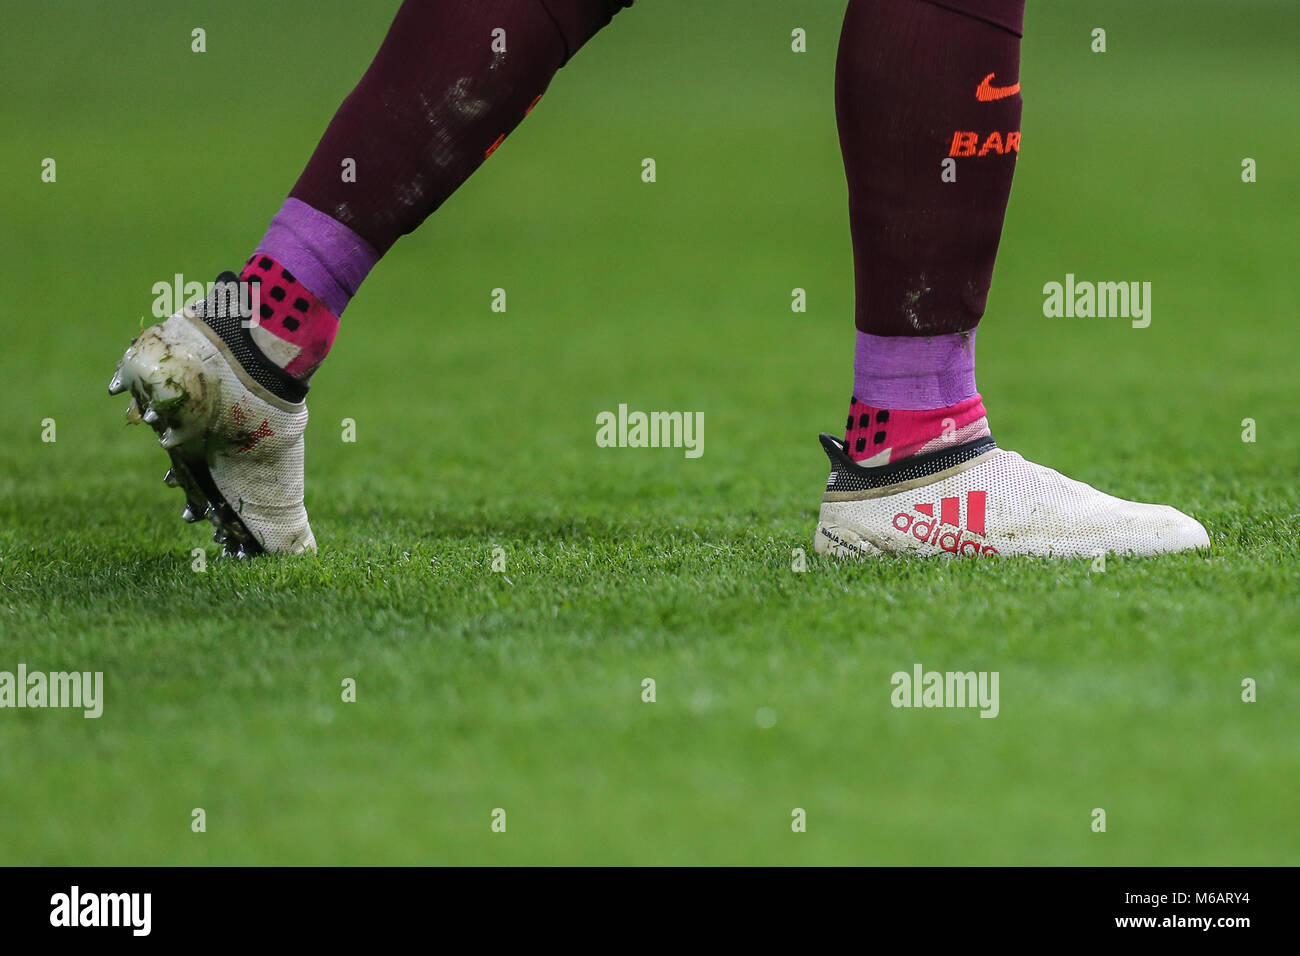 Los calcetines y las botas de Luis Suárez de Barcelona durante la final de  la UEFA Champions League entre Chelsea y Barcelona en Stamford Bridge,  Londres, Engla Fotografía de stock - Alamy